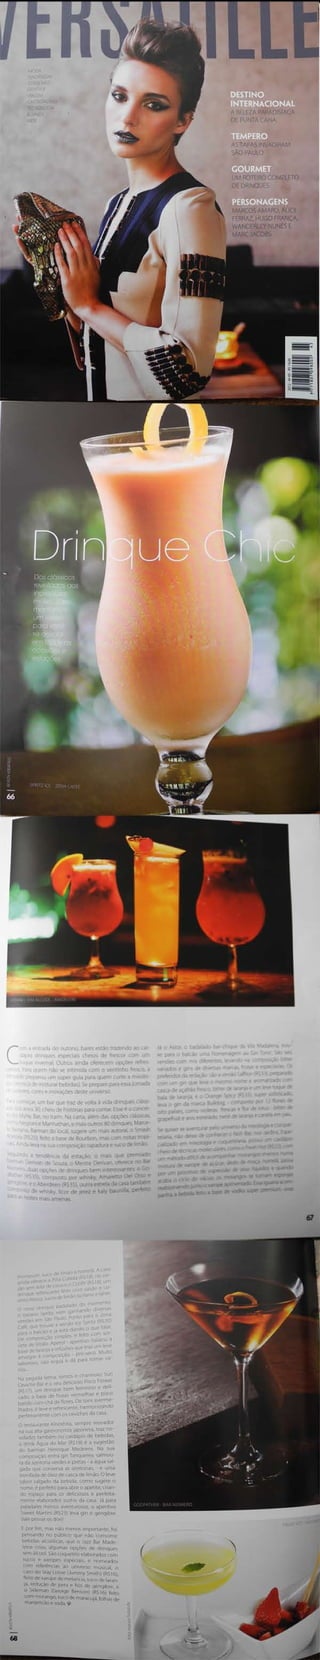 Drink Chic Revista Versatille Abril n. 65